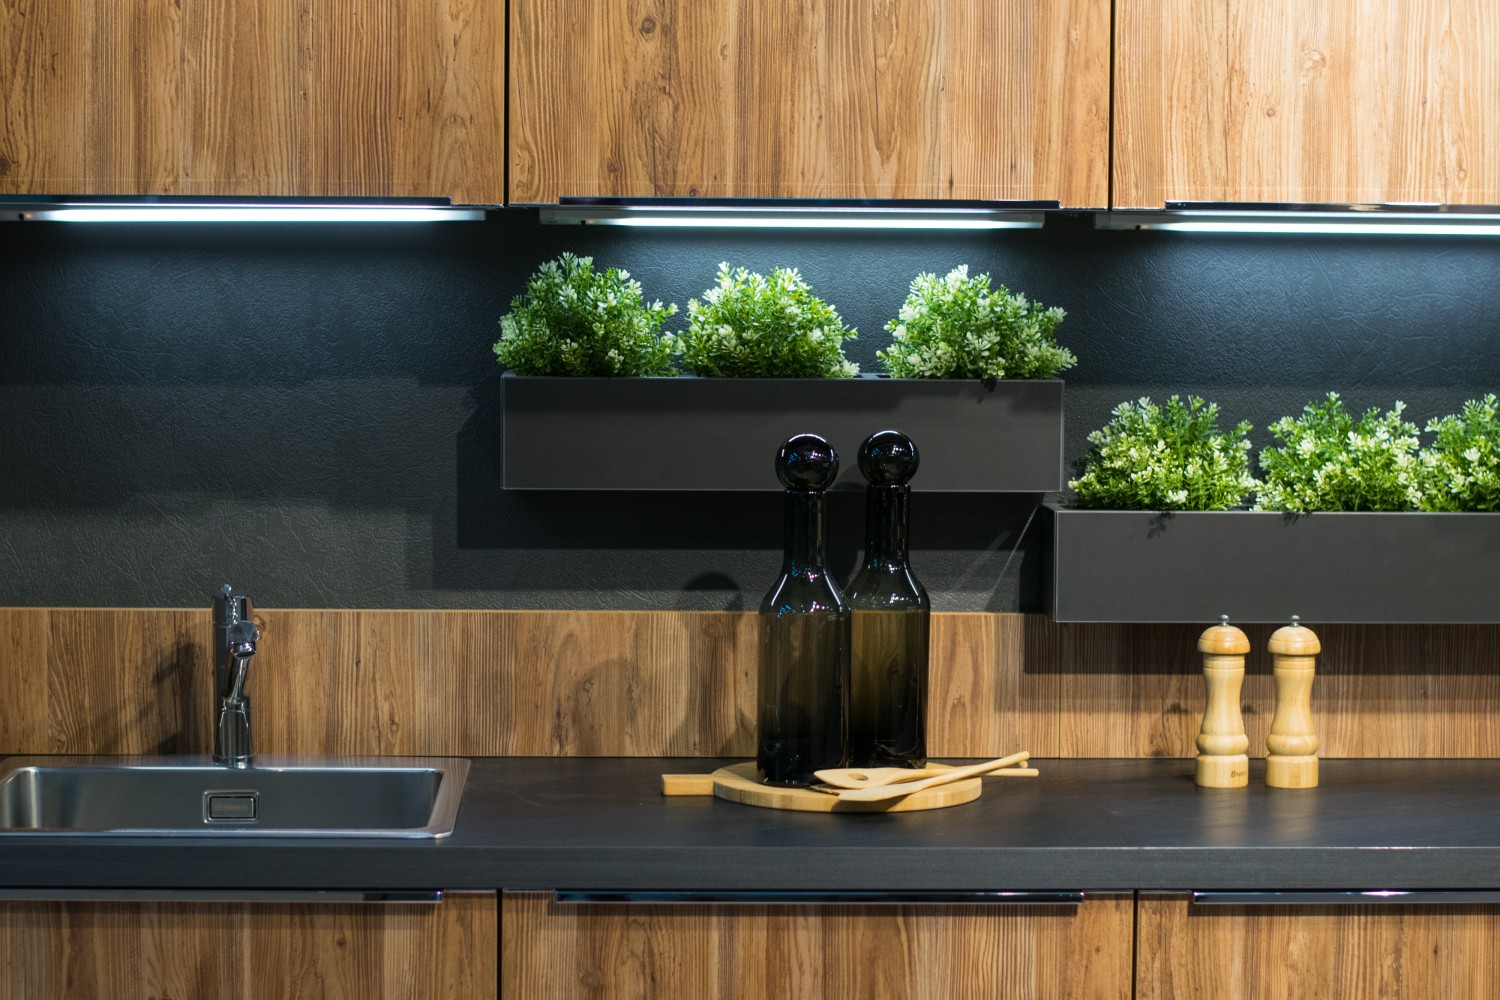 Cozinha com armários de madeira com um mini jardim com ervas aromáticas